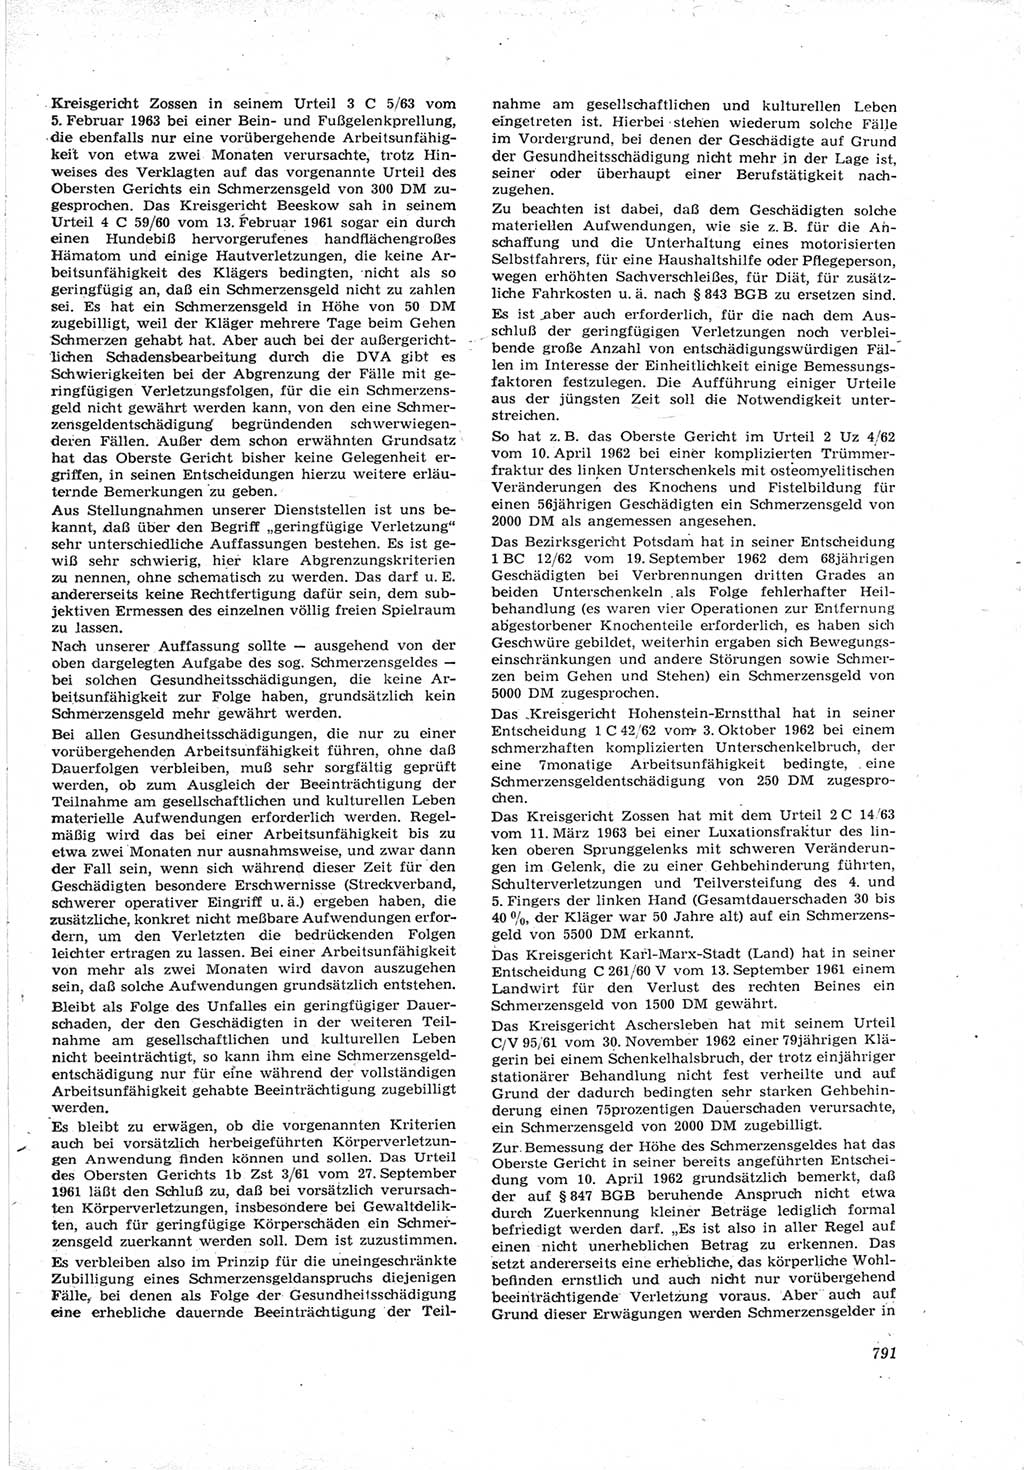 Neue Justiz (NJ), Zeitschrift für Recht und Rechtswissenschaft [Deutsche Demokratische Republik (DDR)], 17. Jahrgang 1963, Seite 791 (NJ DDR 1963, S. 791)